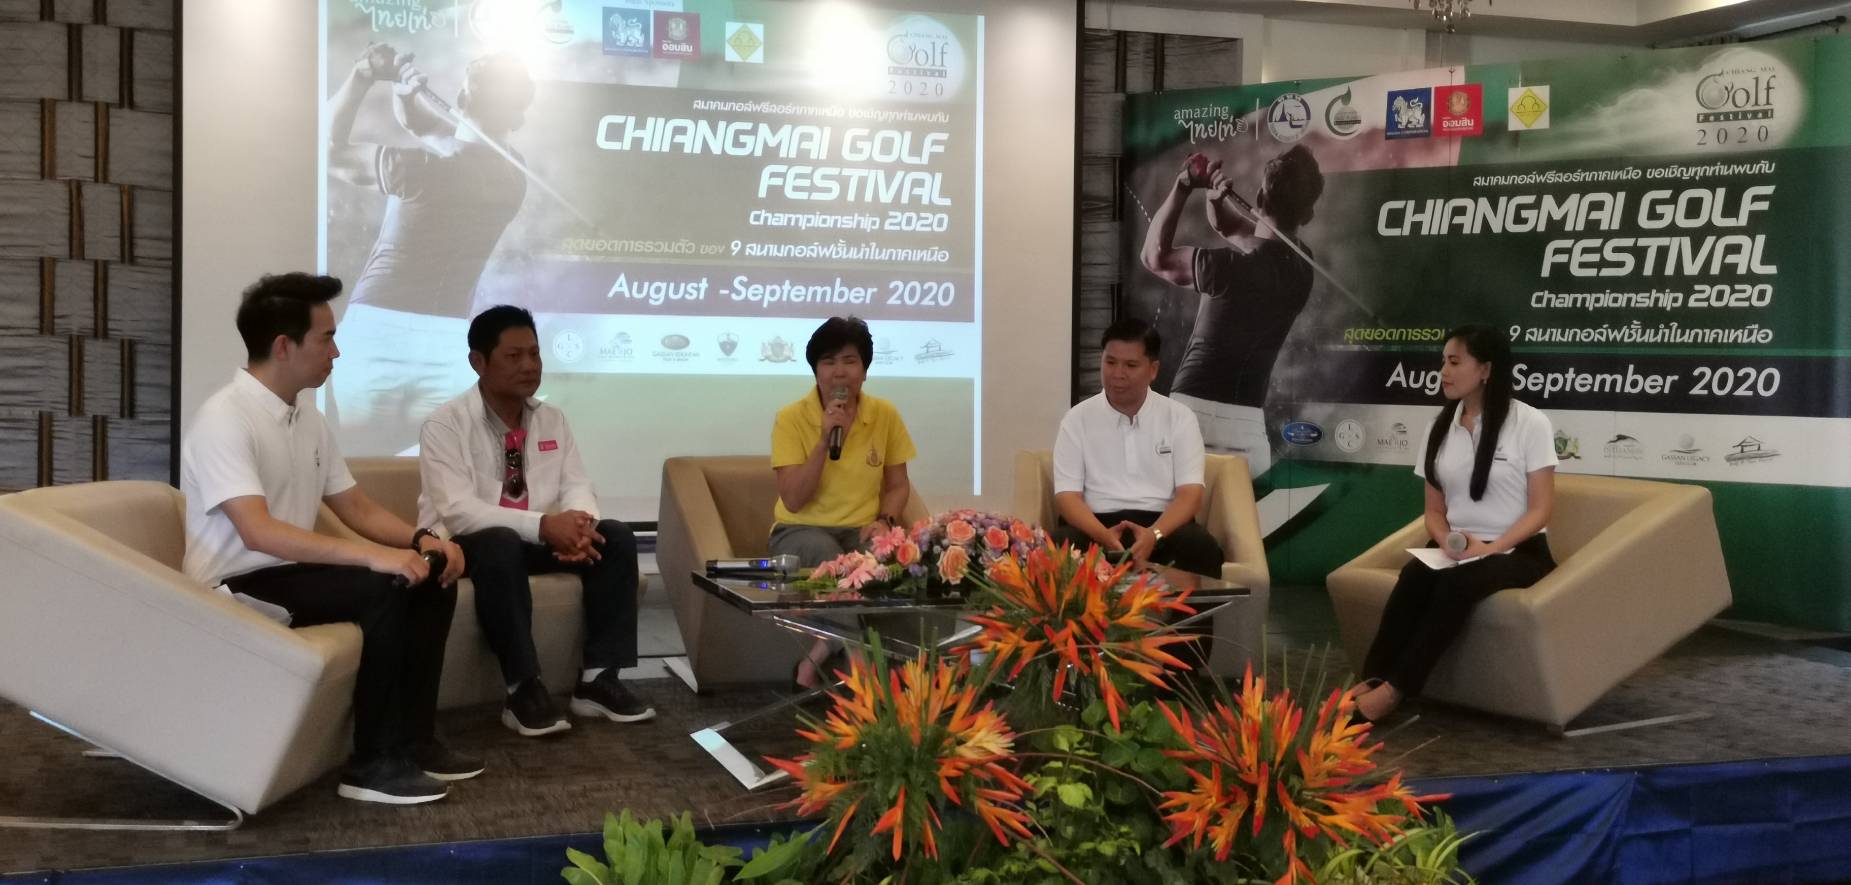 ททท.เชียงใหม่จับมือสมาคมสนามกอล์ฟ รีสอร์ทภาคเหนือ เปิดตัวโครงการ Chiangmai Golf Festival Championship 2020 ภายใต้ โครงการ “เที่ยวได้ทุกเวย์…Weekday in Chiang Mai” กระตุ้นการท่องเที่ยวเชียงใหม่ – ลำพูน ช่วง 1 ส.ค. – 30 ก.ย. 63